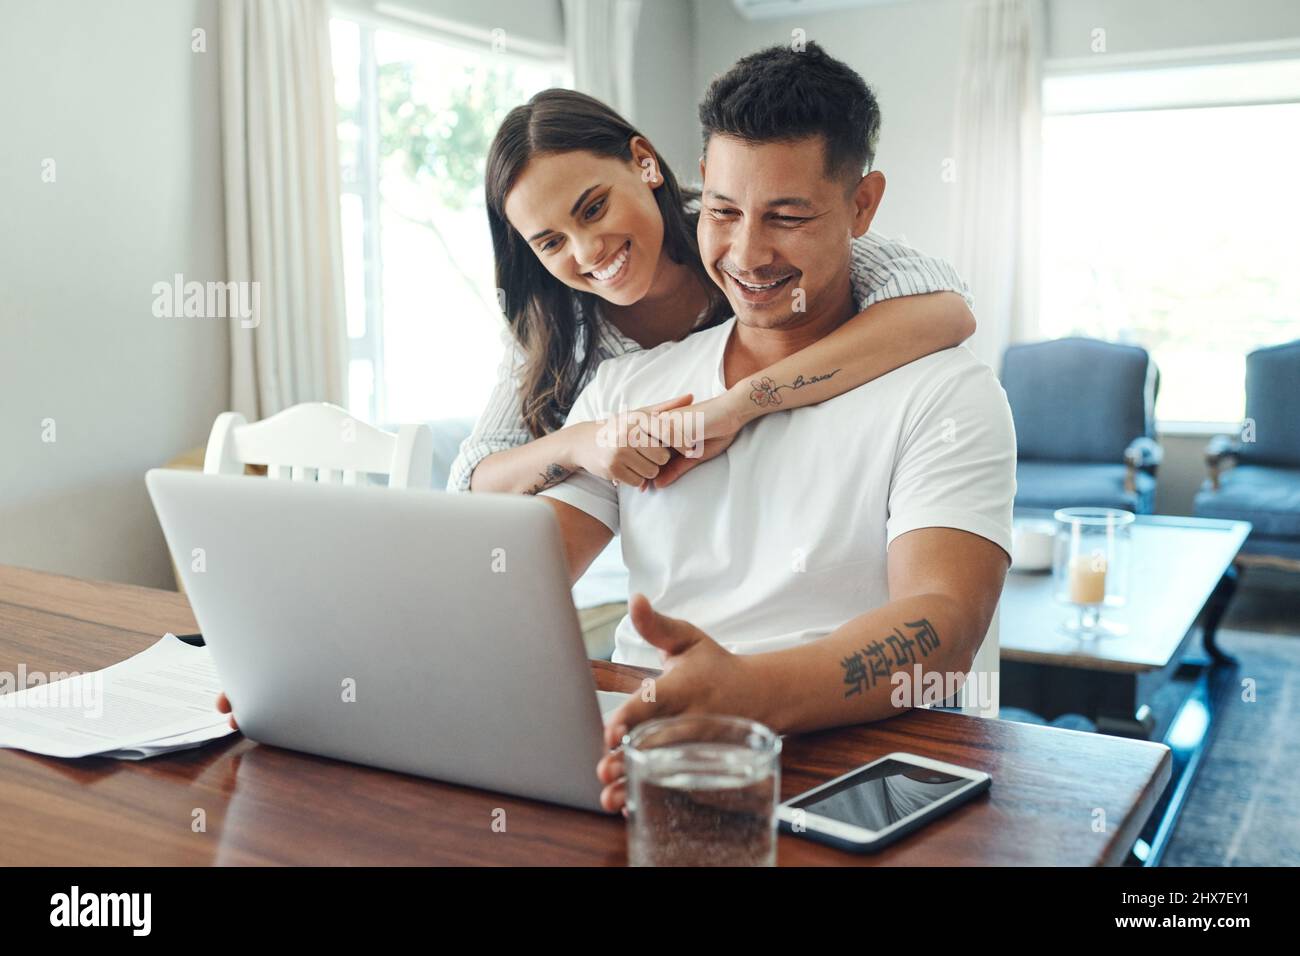 Unsere finanzielle Zukunft sieht gut aus. Eine kurze Aufnahme eines liebevollen jungen Paares, das einen Laptop für sein Haushaltsbudget im Wohnzimmer zu Hause verwendet. Stockfoto